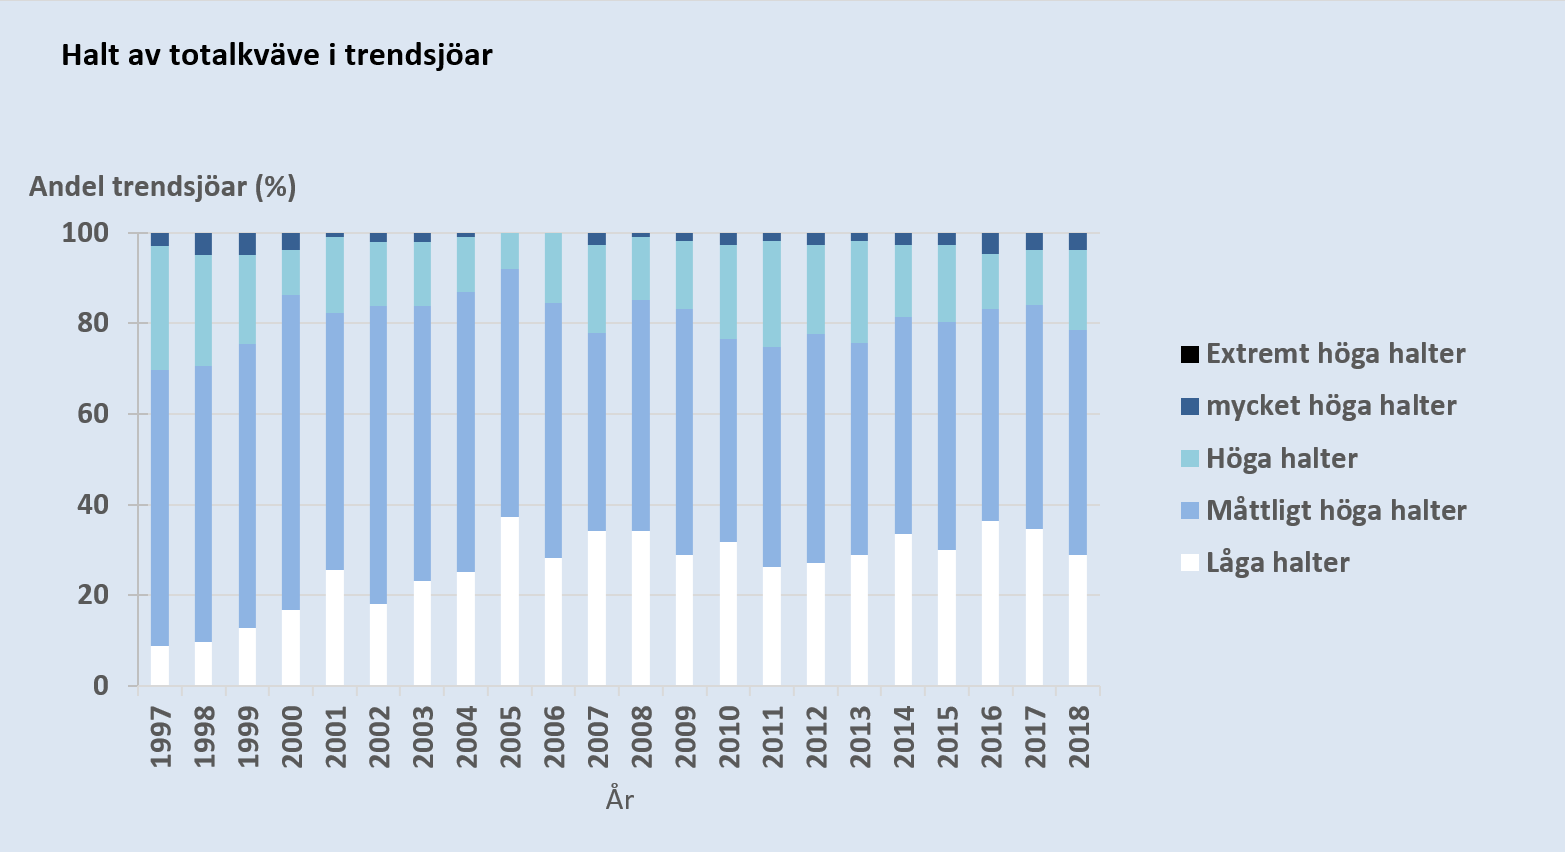 Halt av totalkväve i trendsjöar 1997-2018. Diagram, illustration.